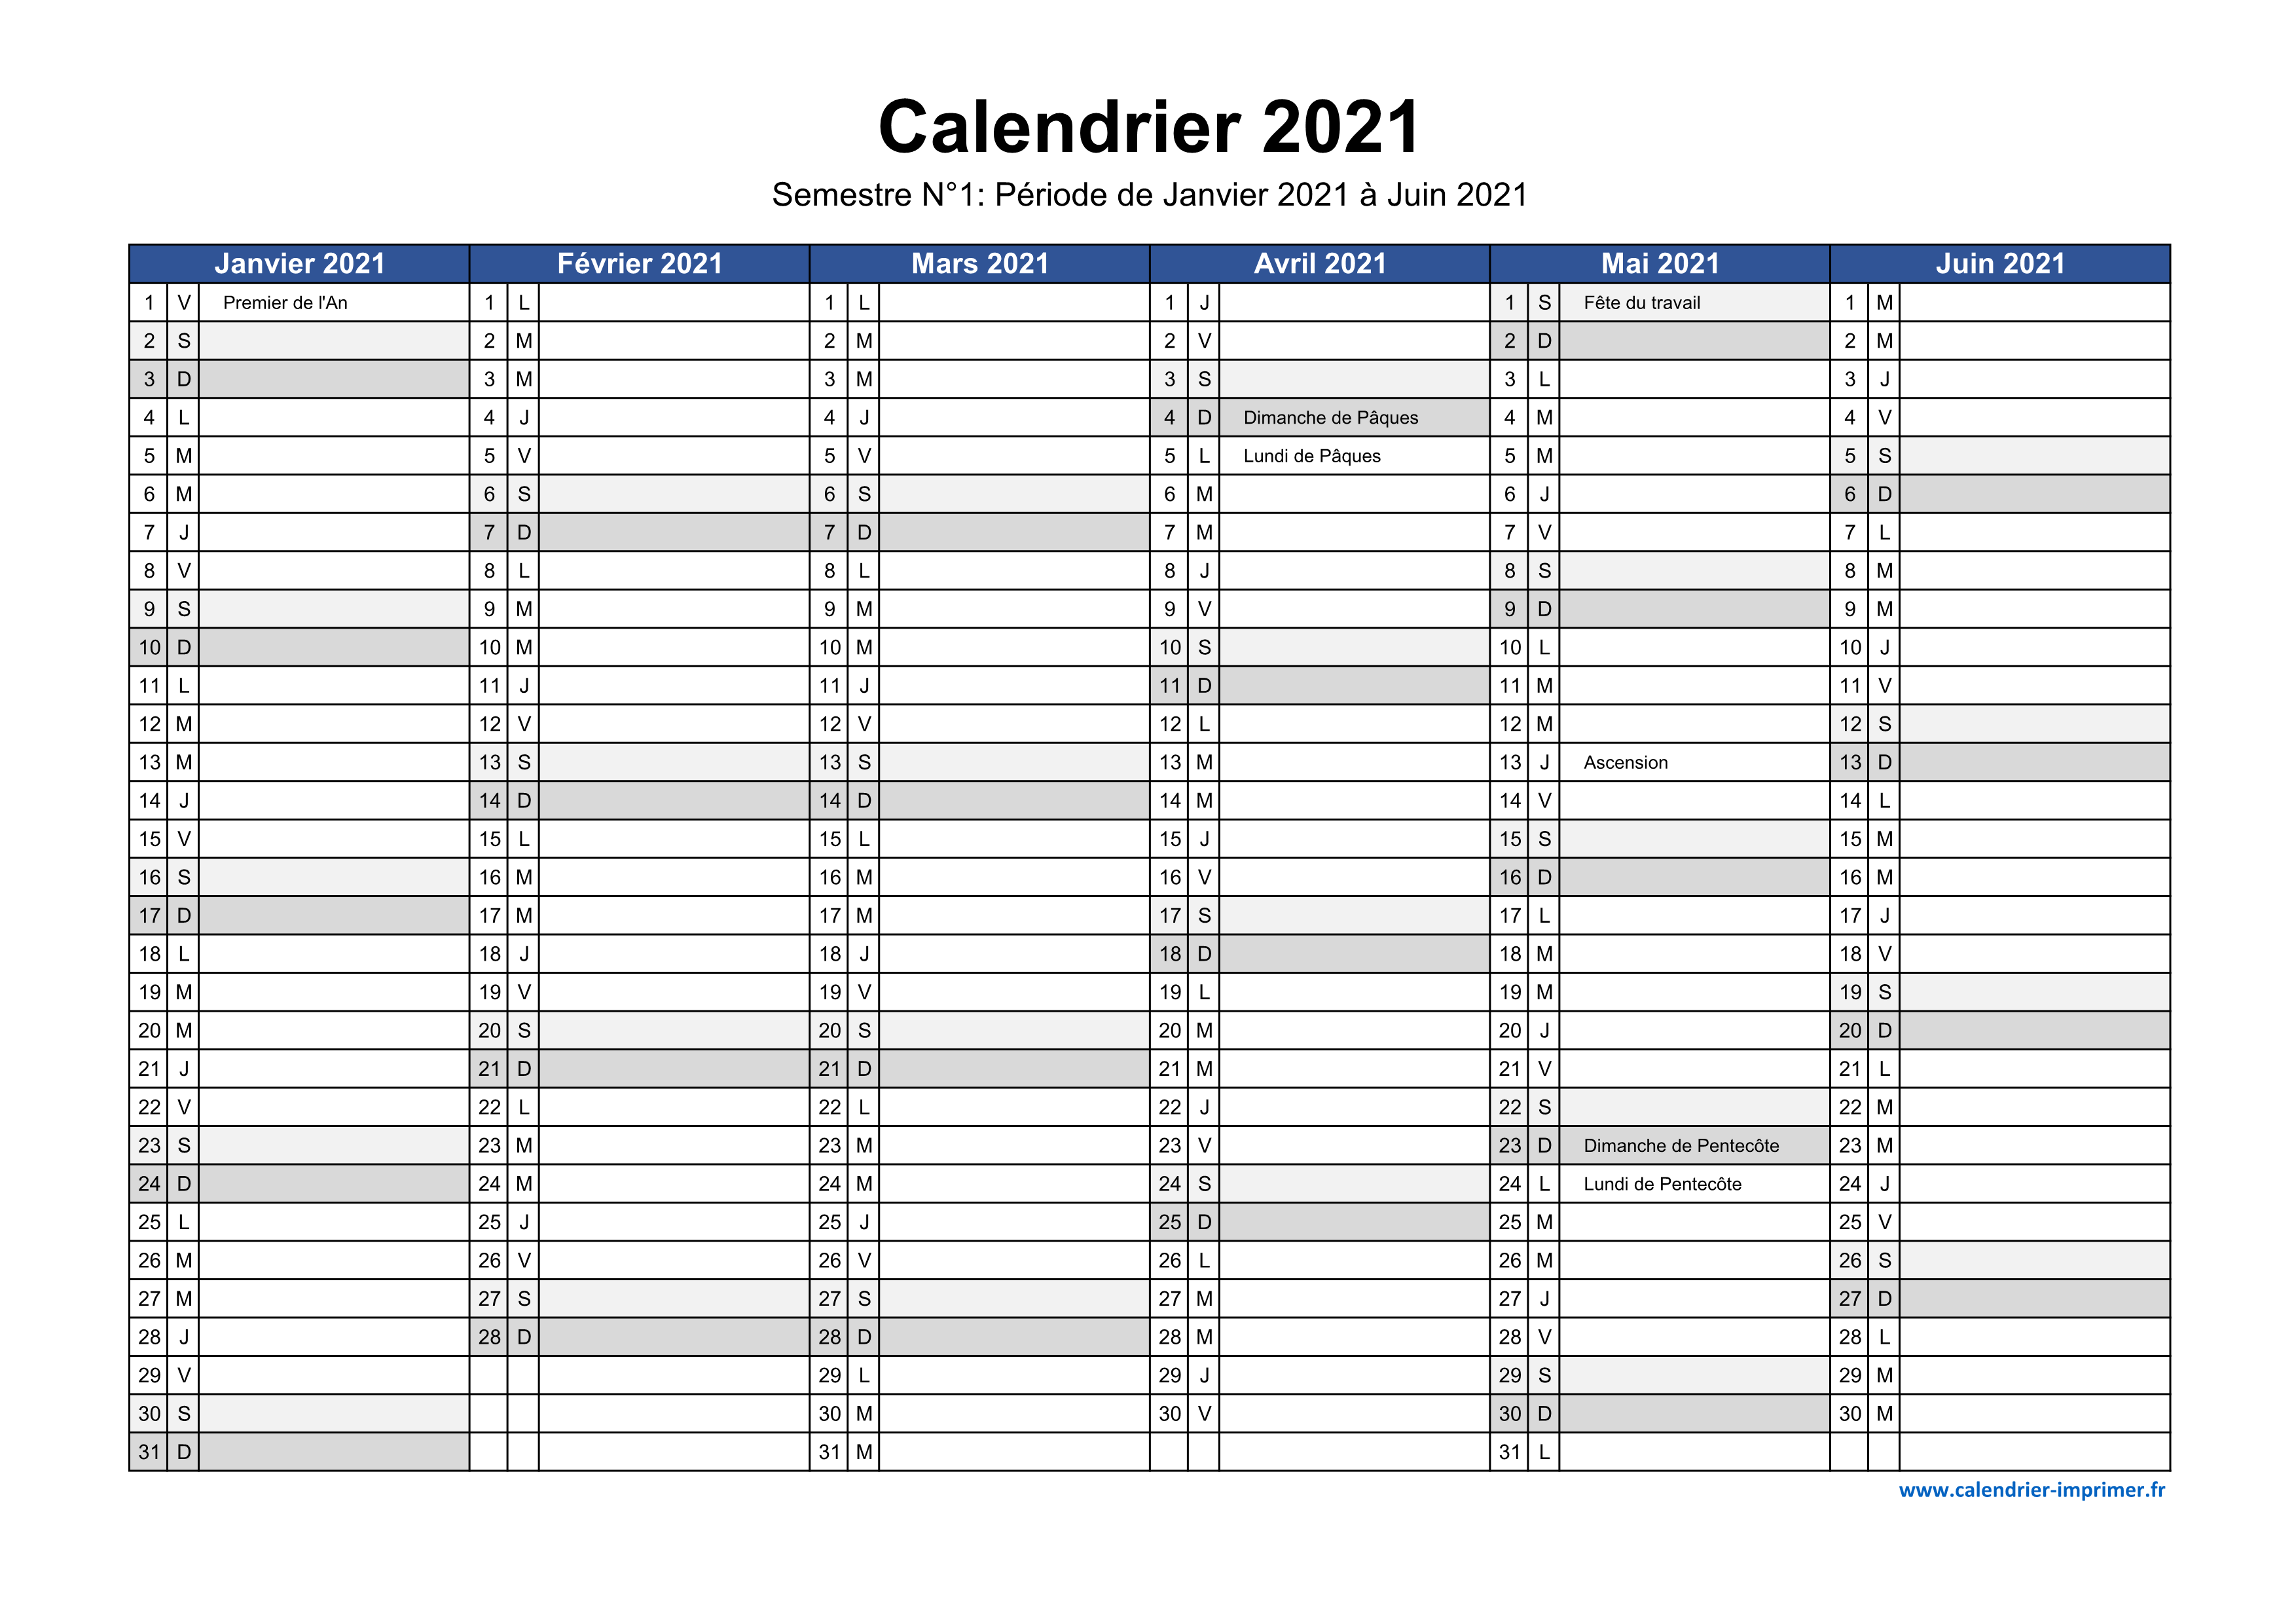 Calendrier planning mensuel 2021 vierge, format portrait, avec les